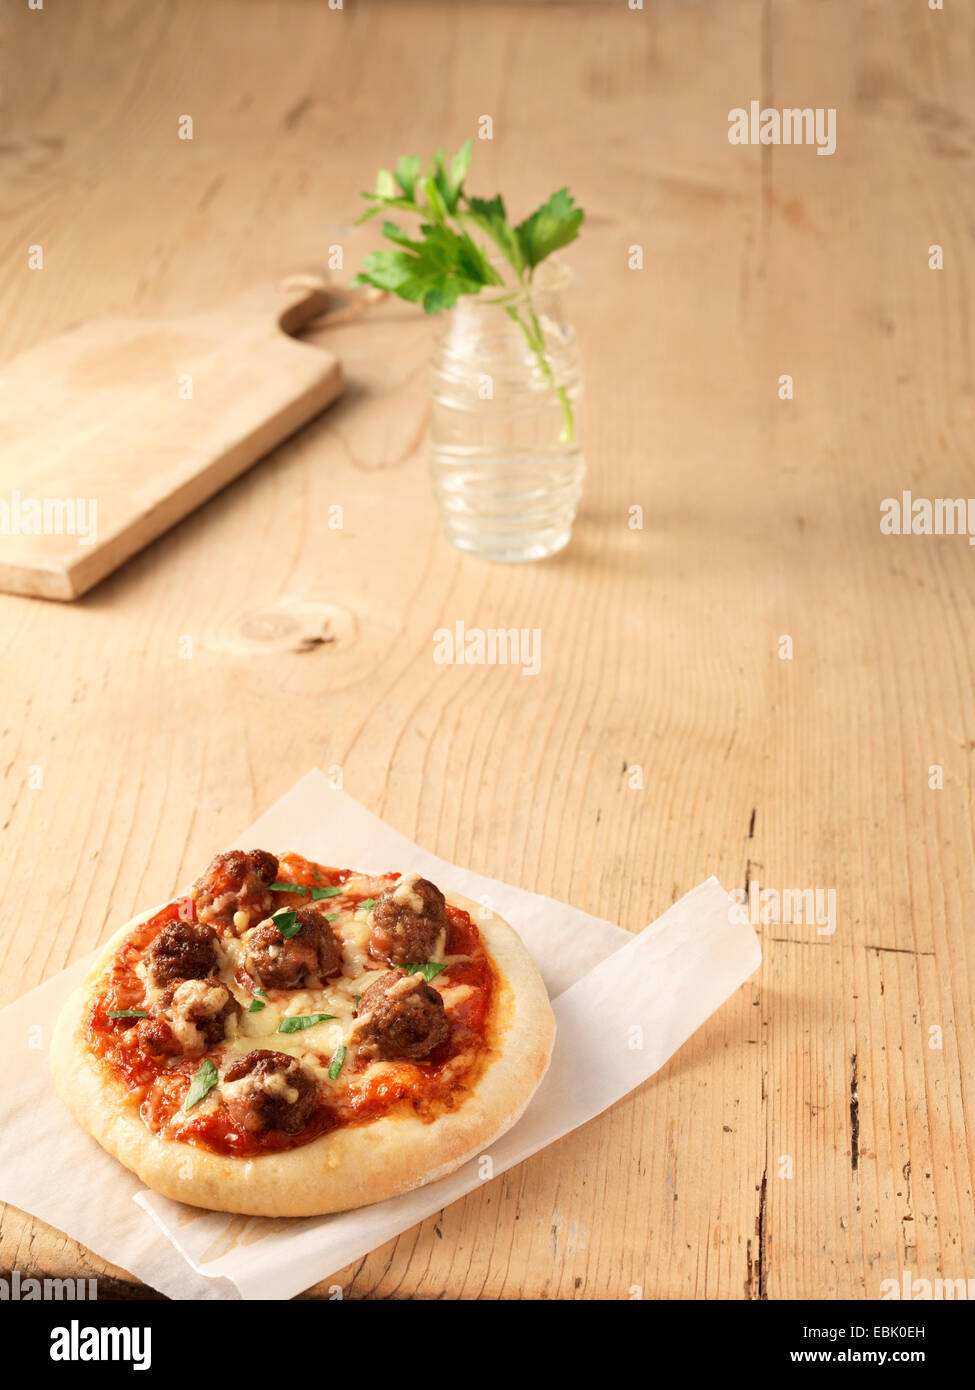 Polpette con formaggio e pizza sulla carta oleata Foto Stock